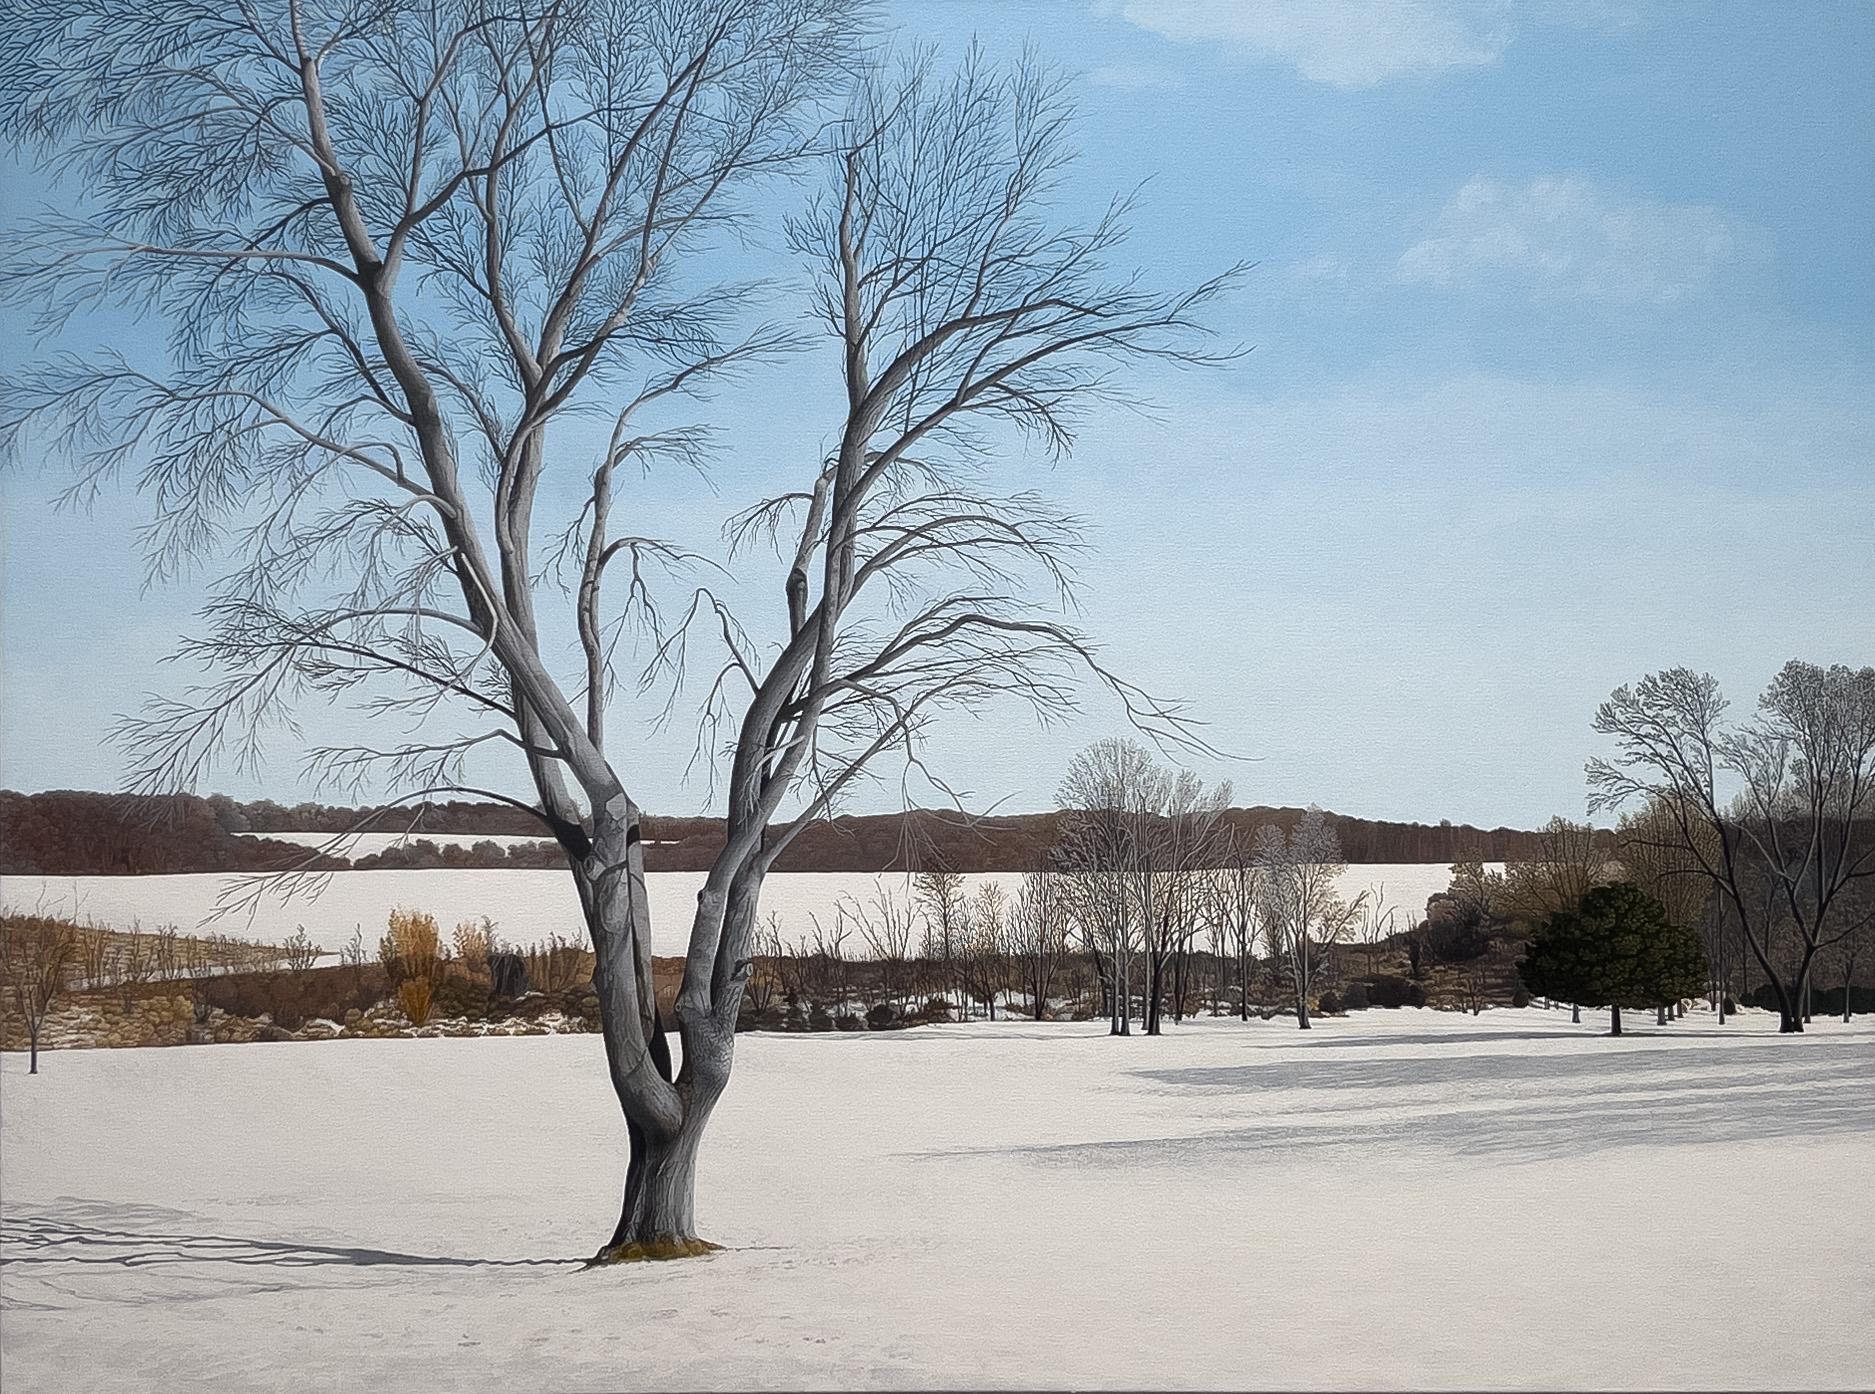 Landscape Painting Anita Mazzucca - LONGUES OMBRES SUR LA NEIGE - Paysage / Réalisme / Scène d'hiver contemporaine